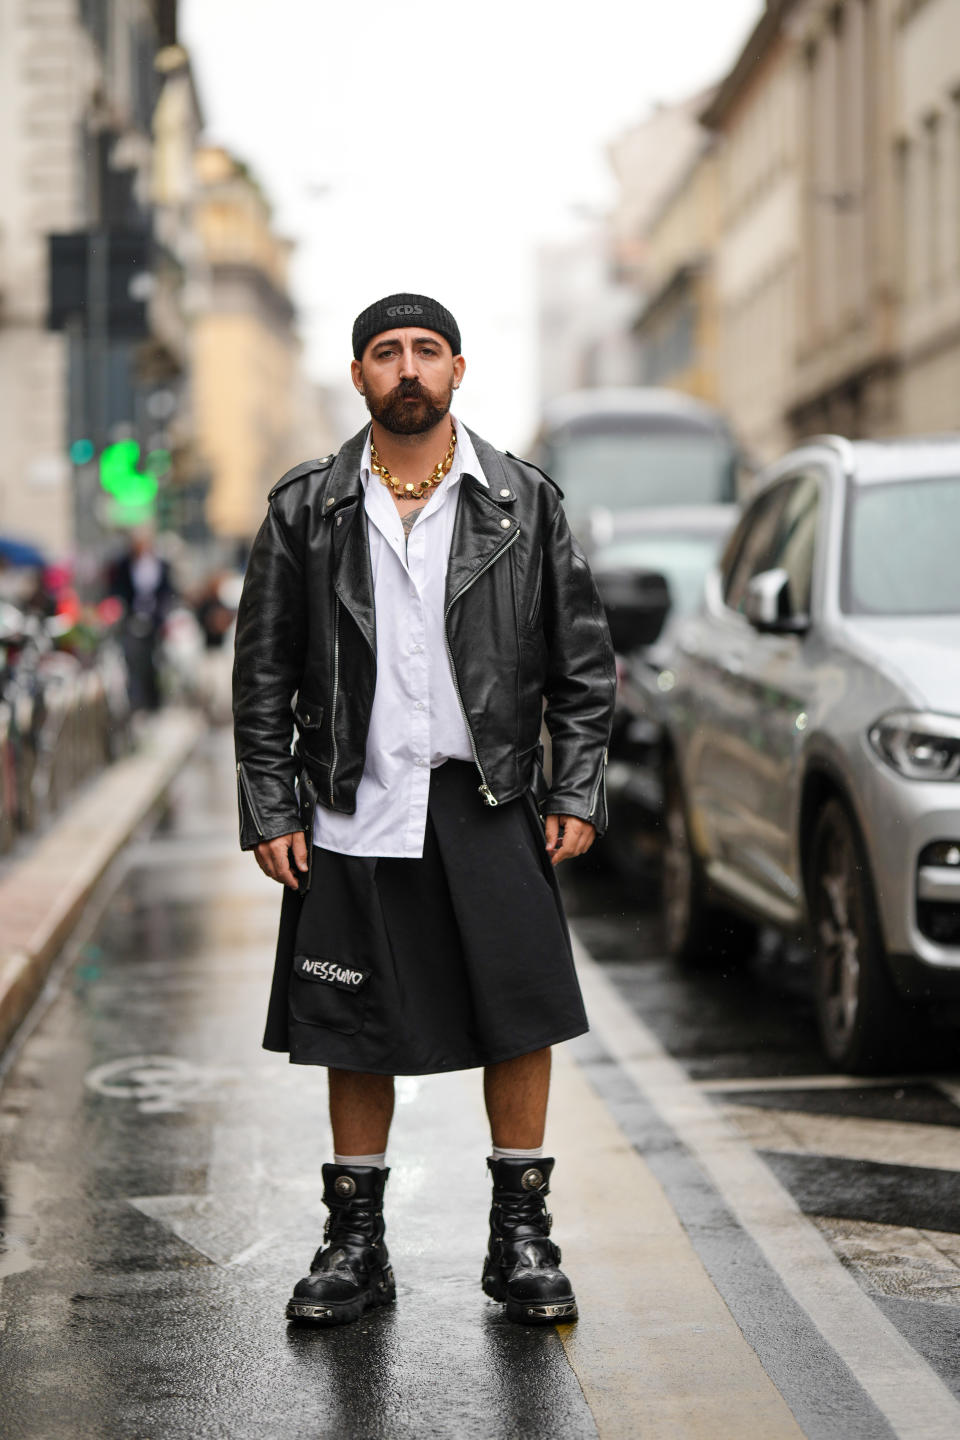 El street style en las grandes capitales de la moda, como Milán, muestra frecuentemente hombres con falda que derrochan personalidad y estilo.  (Foto de Edward Berthelot/)